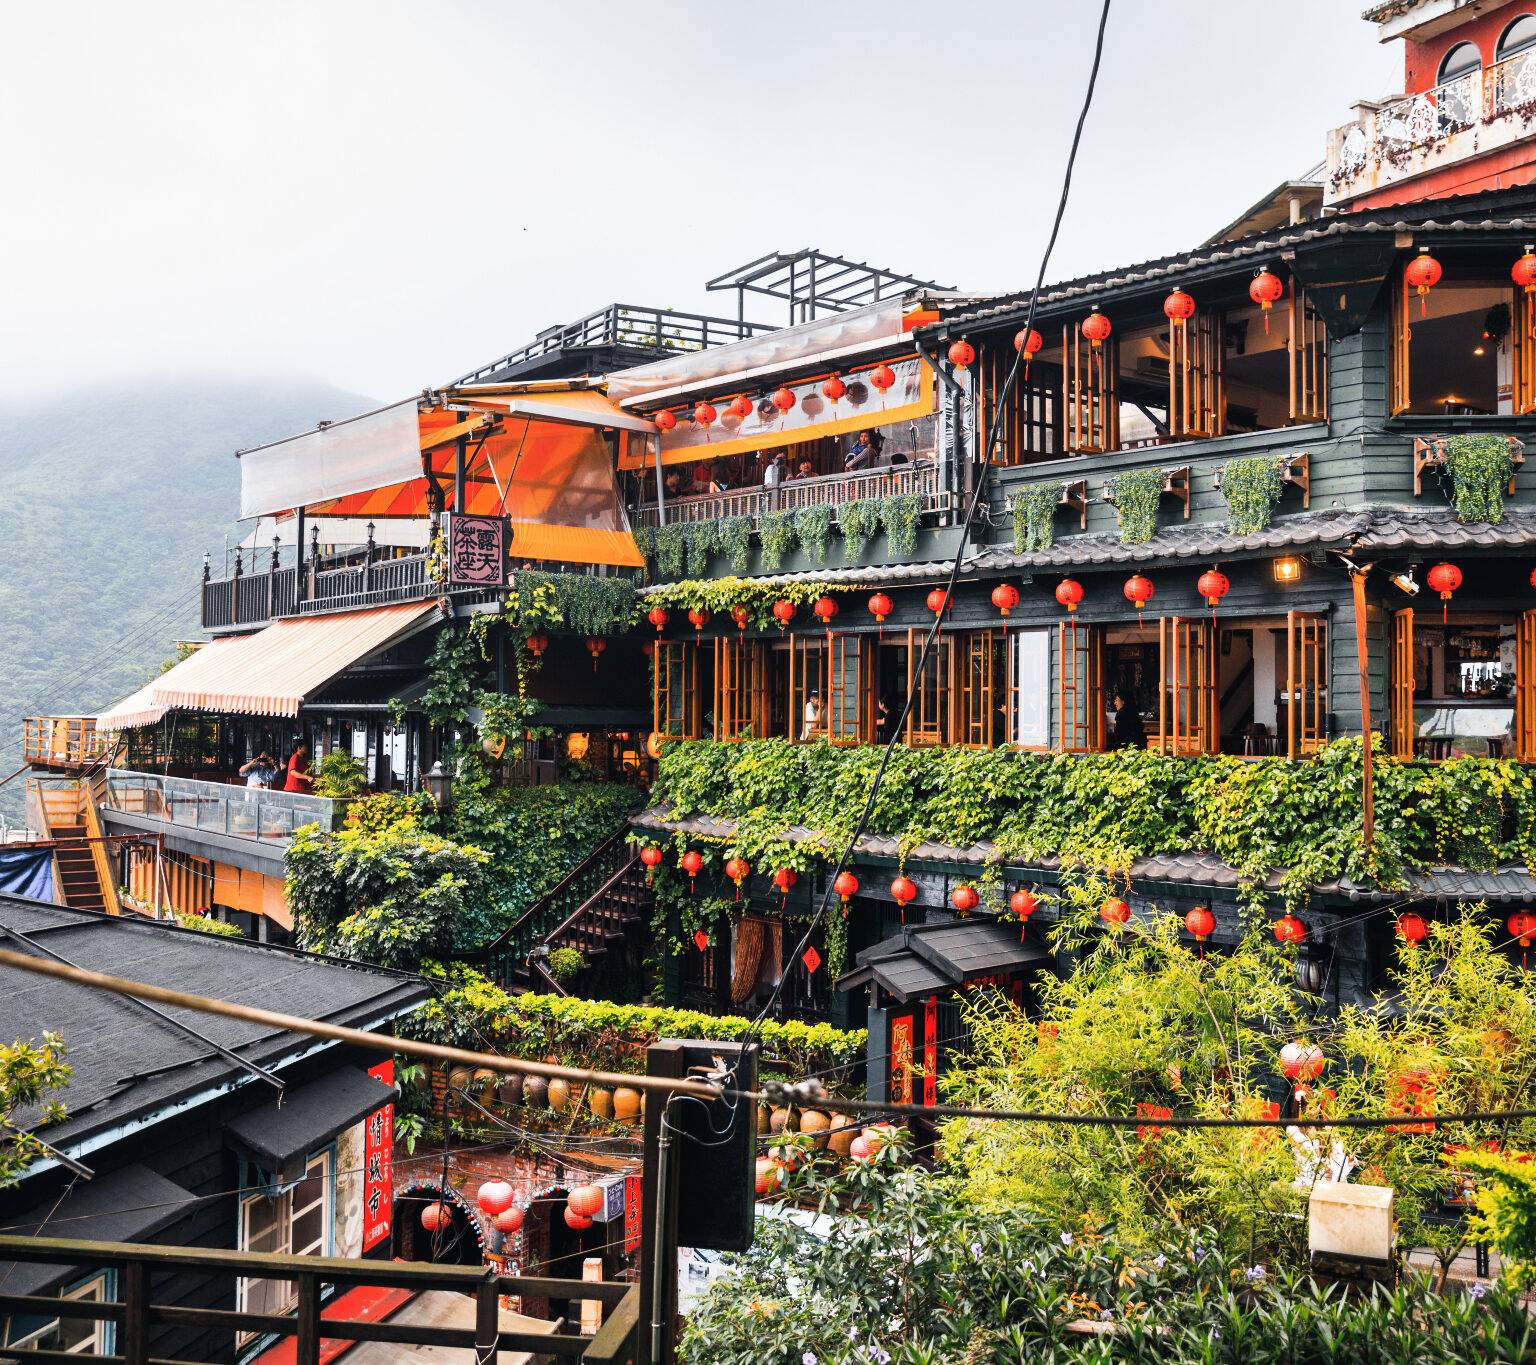 Die Häuser im Bergdorf Jiufen in Taiwan sind geschmückt mit orangenen Lampions.